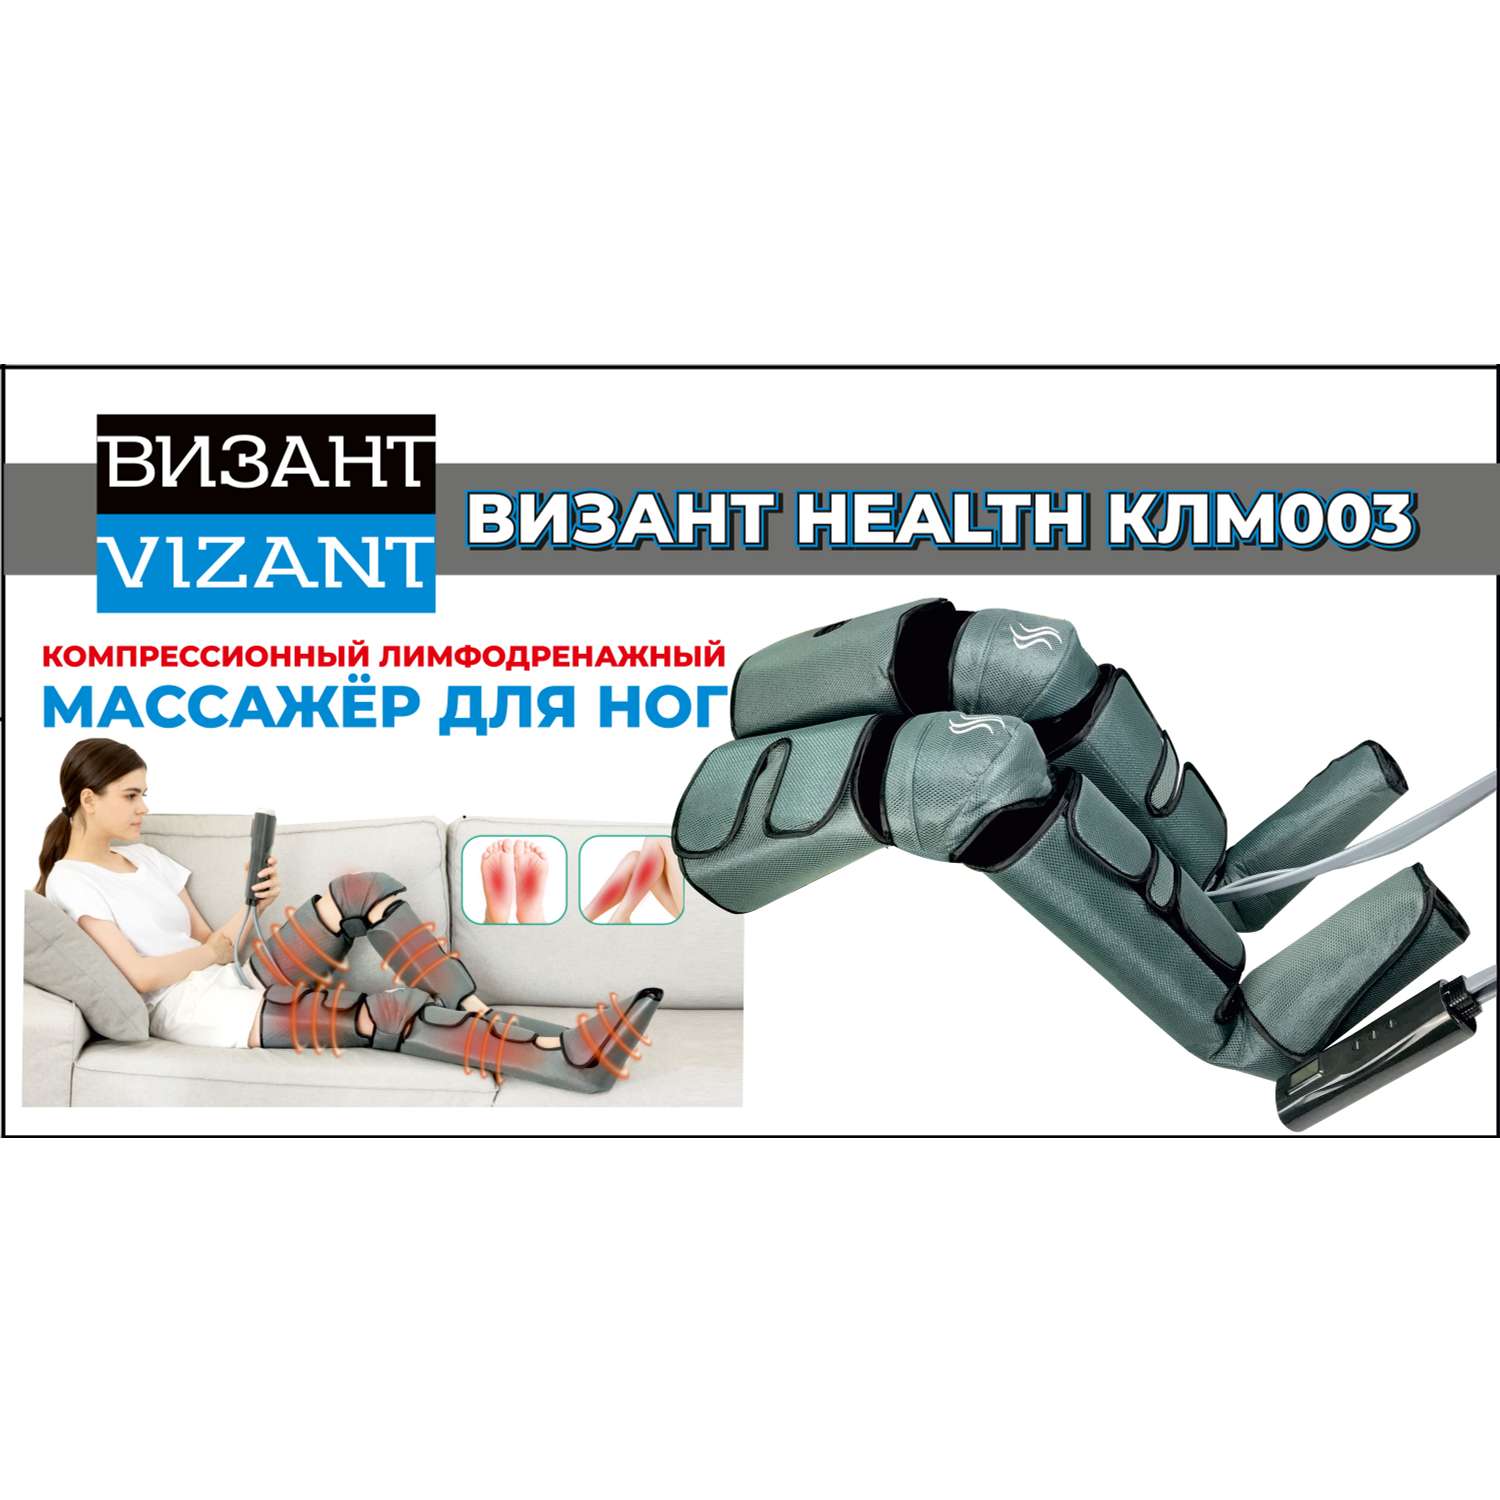 Компресионный для ног Vizant Лимфодренажный массажер для ног HEALTH КЛМ003 - фото 13